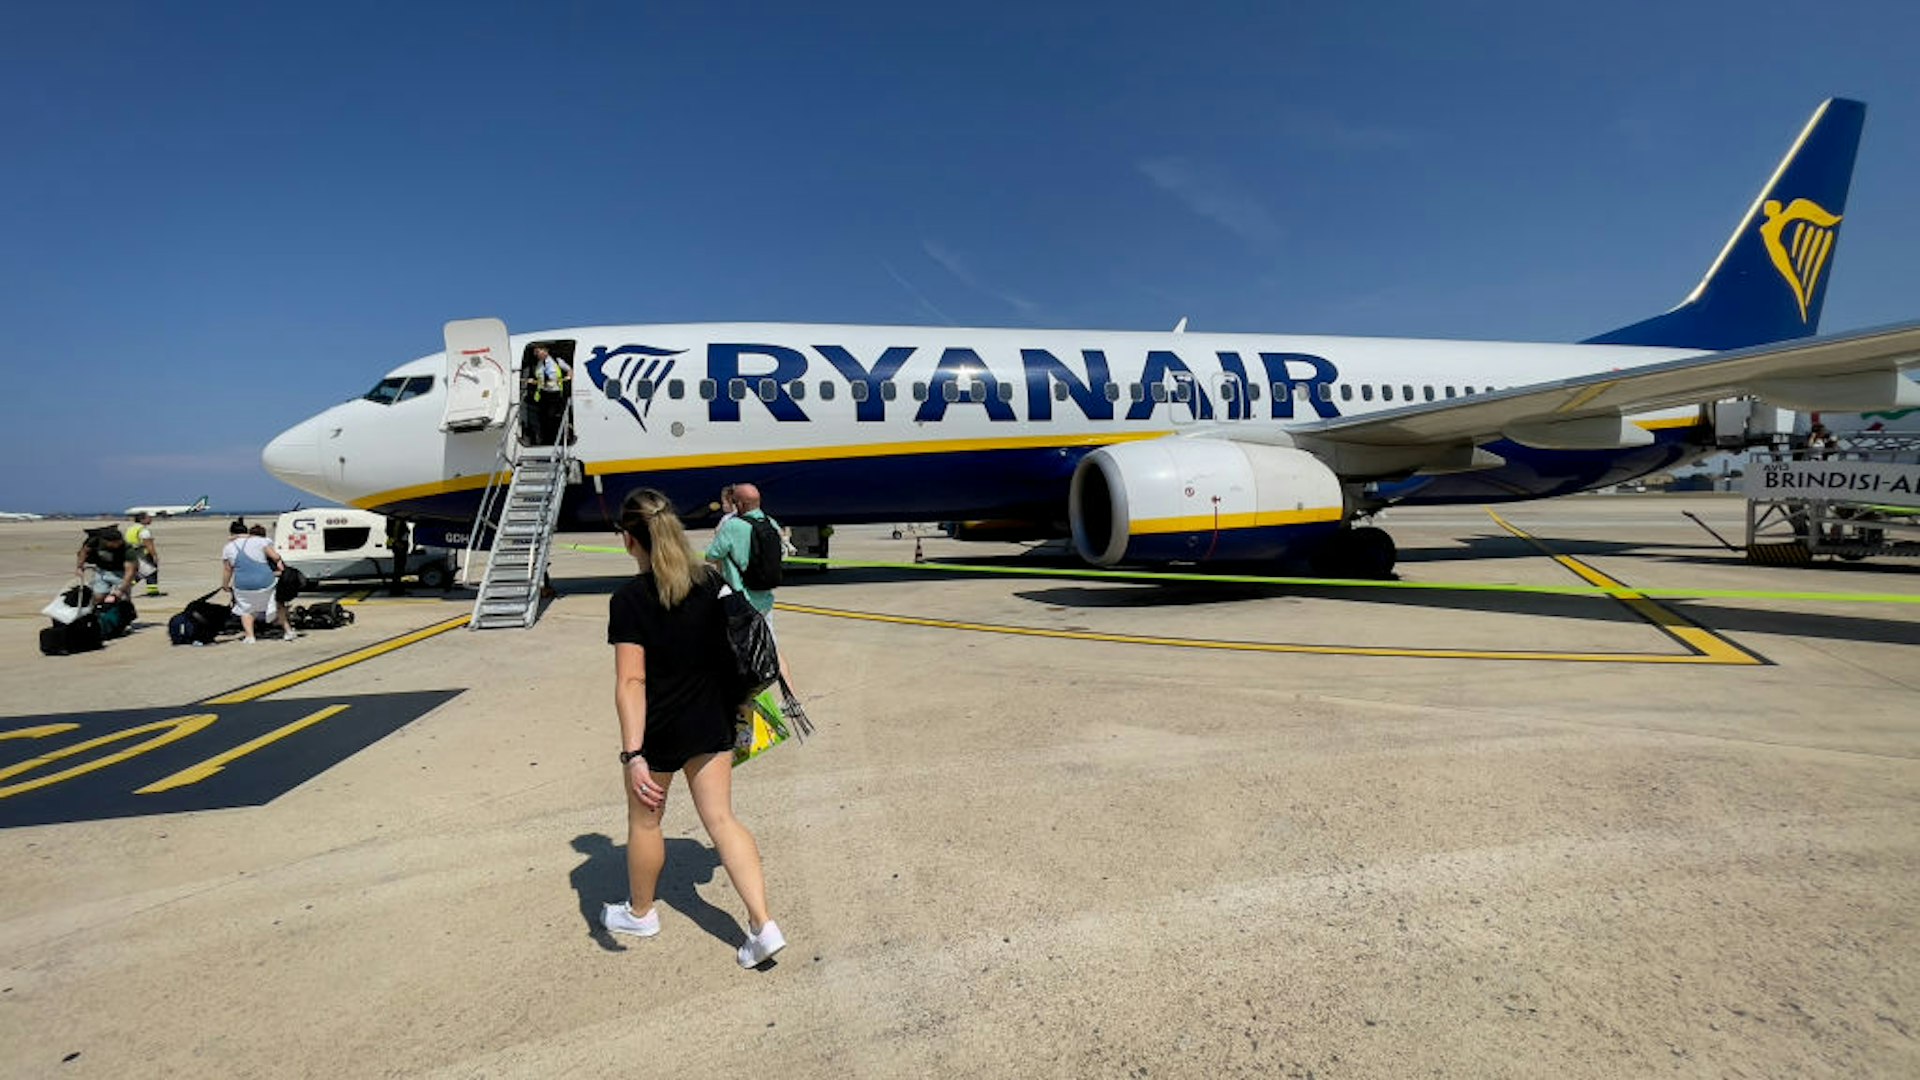 Ryanir FR4717 Lands In Brindisi, Italy